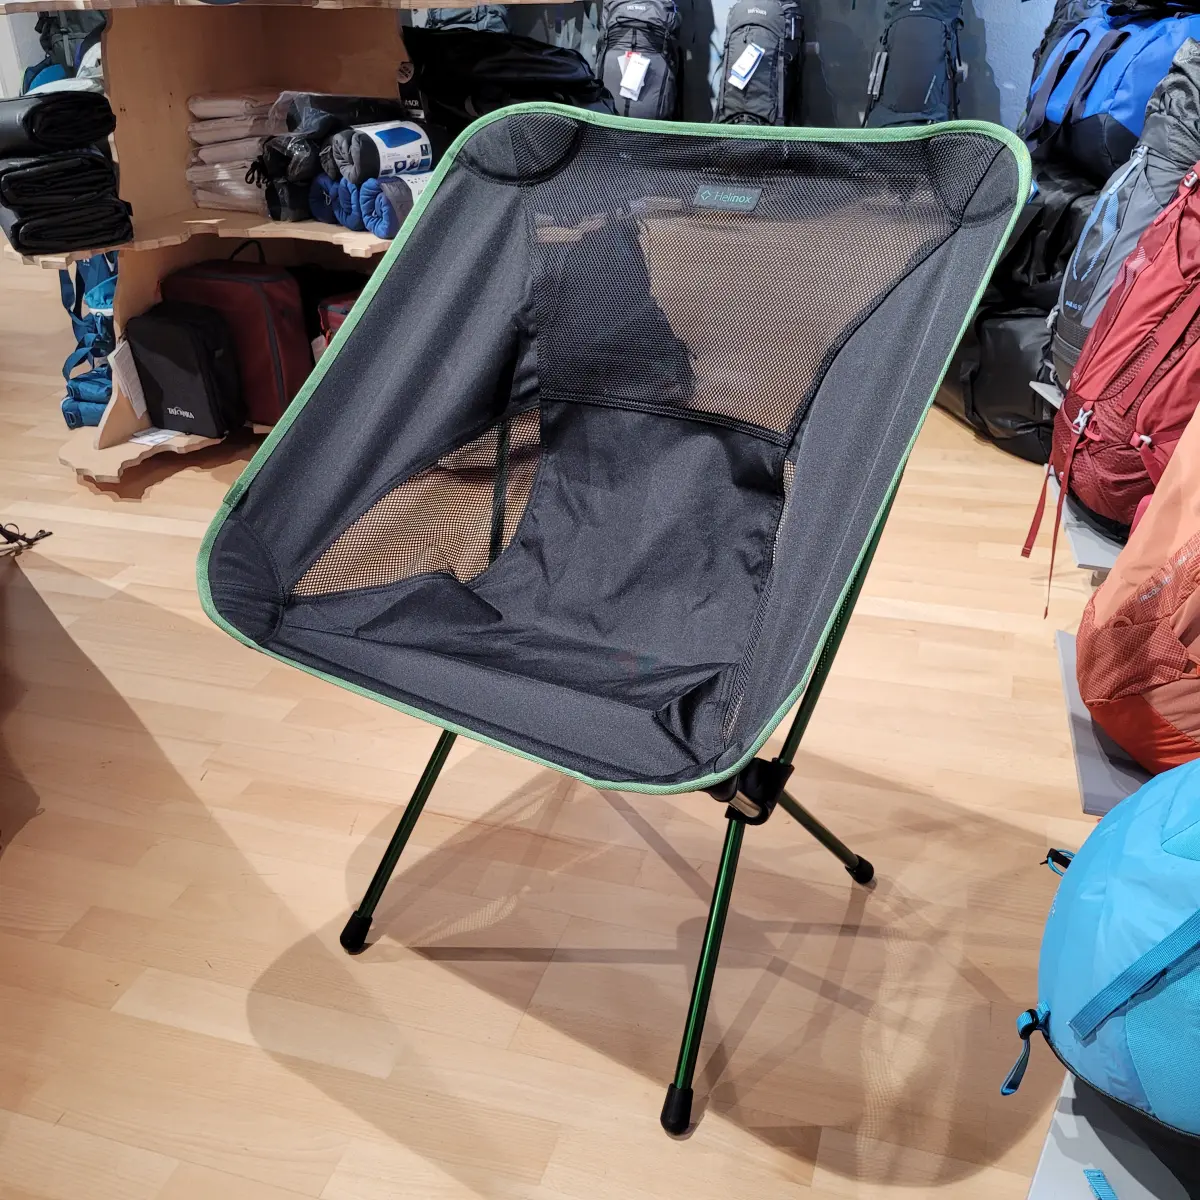 Chair One XL